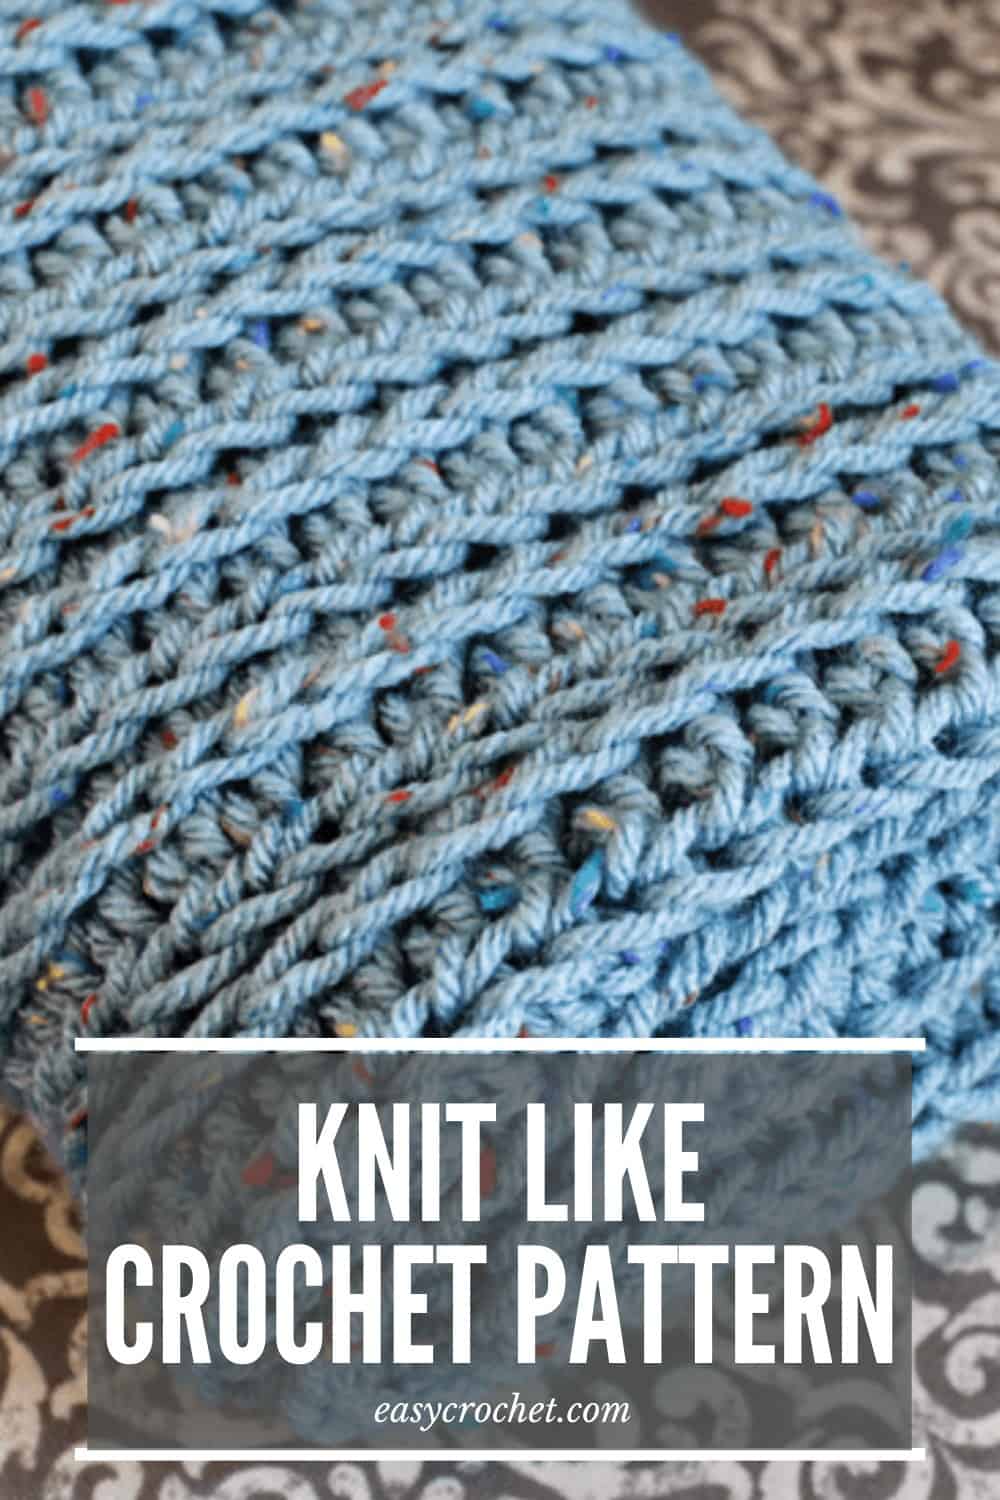 Free Knit Like Crochet Blanket Pattern from Easy Crochet - Simple and Easy to learn! via @easycrochetcom